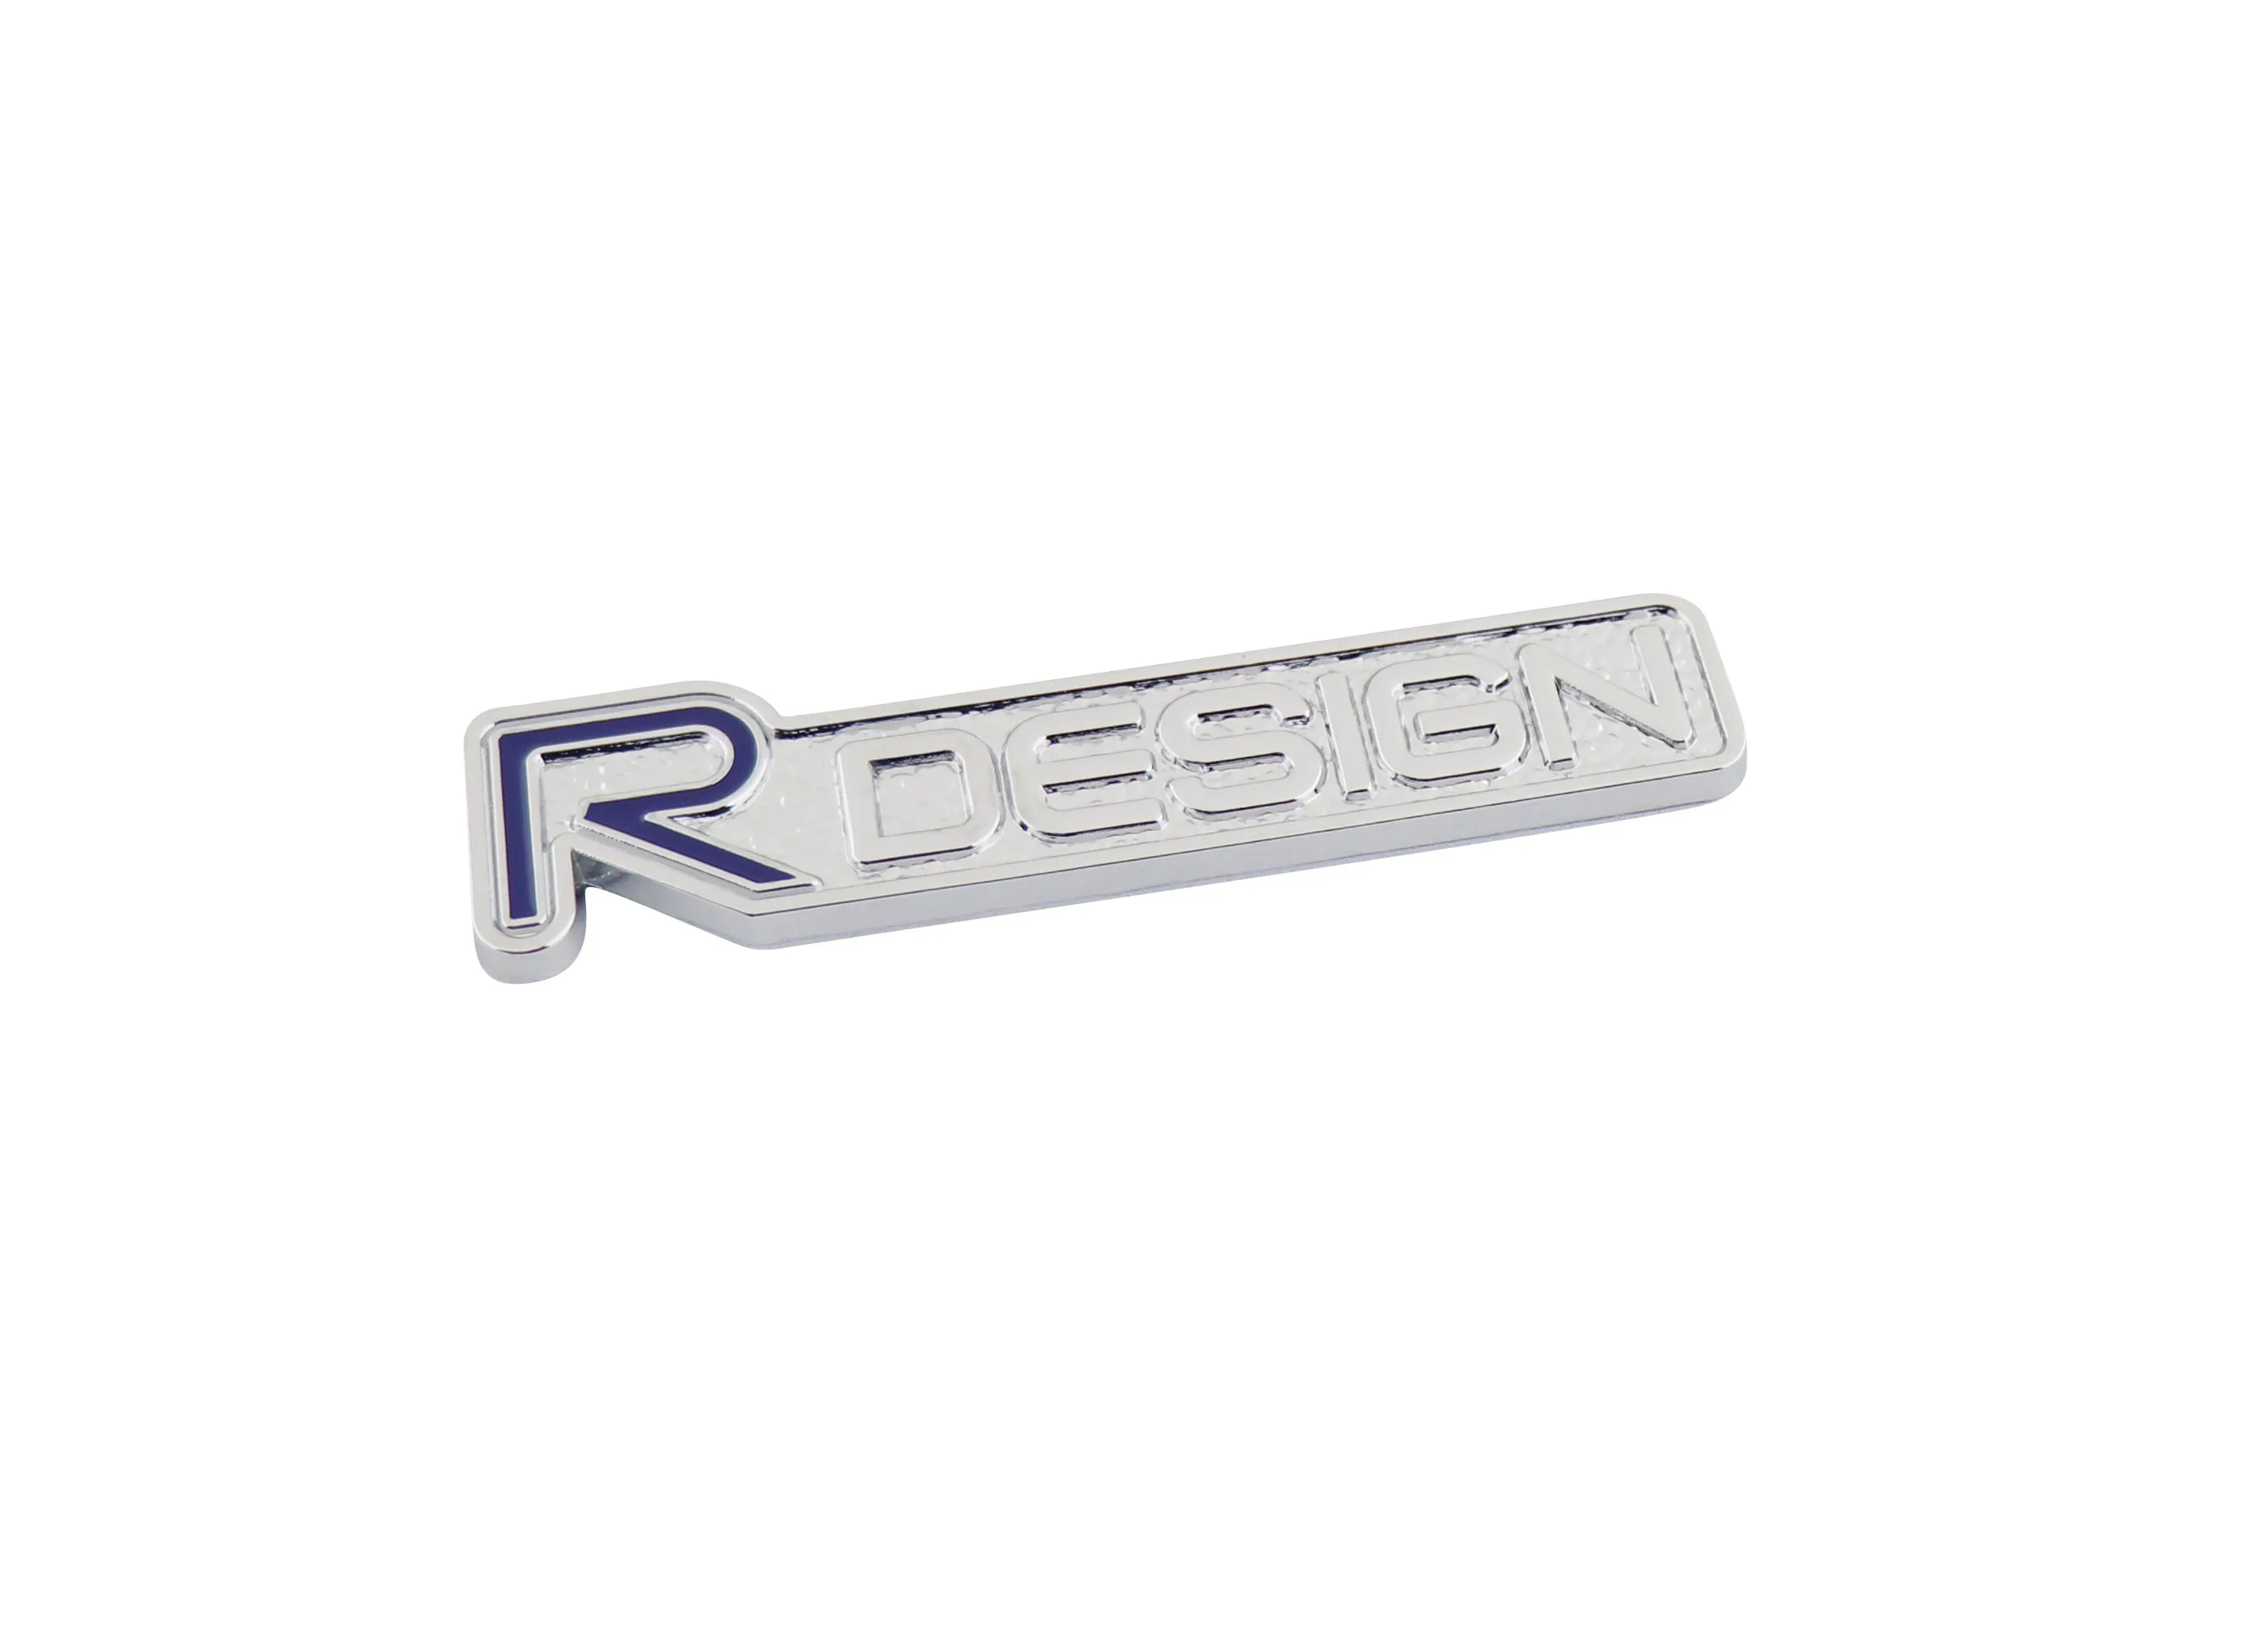 Chrome Blue R-DESIGN for XC90 S60 V60 C30 Fender Trunk Emblem Badge Sticker | Автомобили и мотоциклы